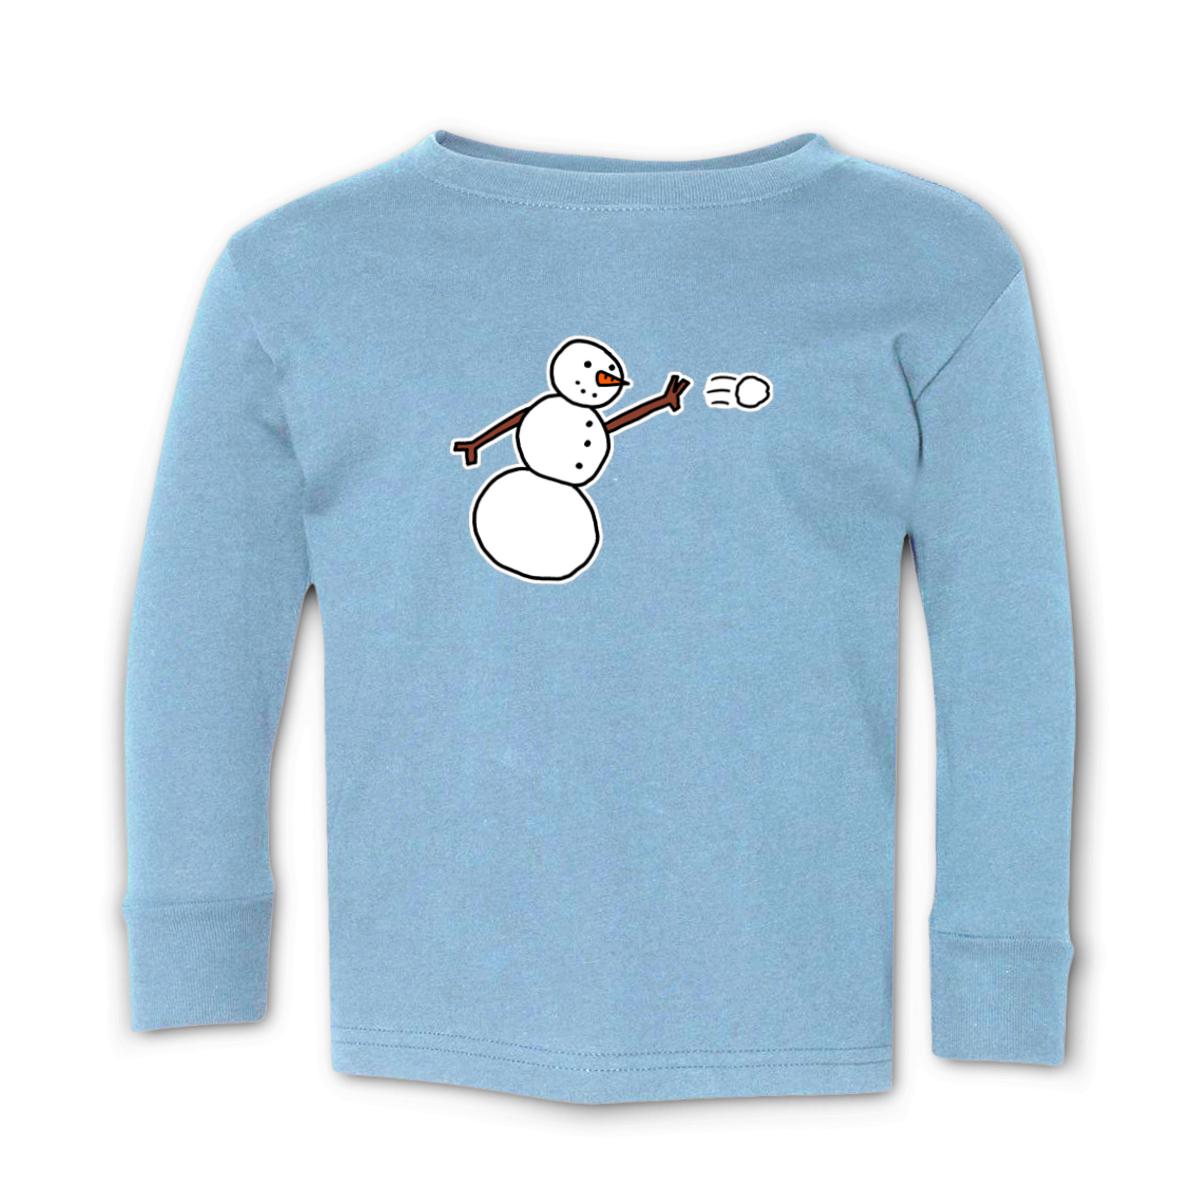 Snowman Throwing Snowball Toddler Long Sleeve Tee 4T light-blue